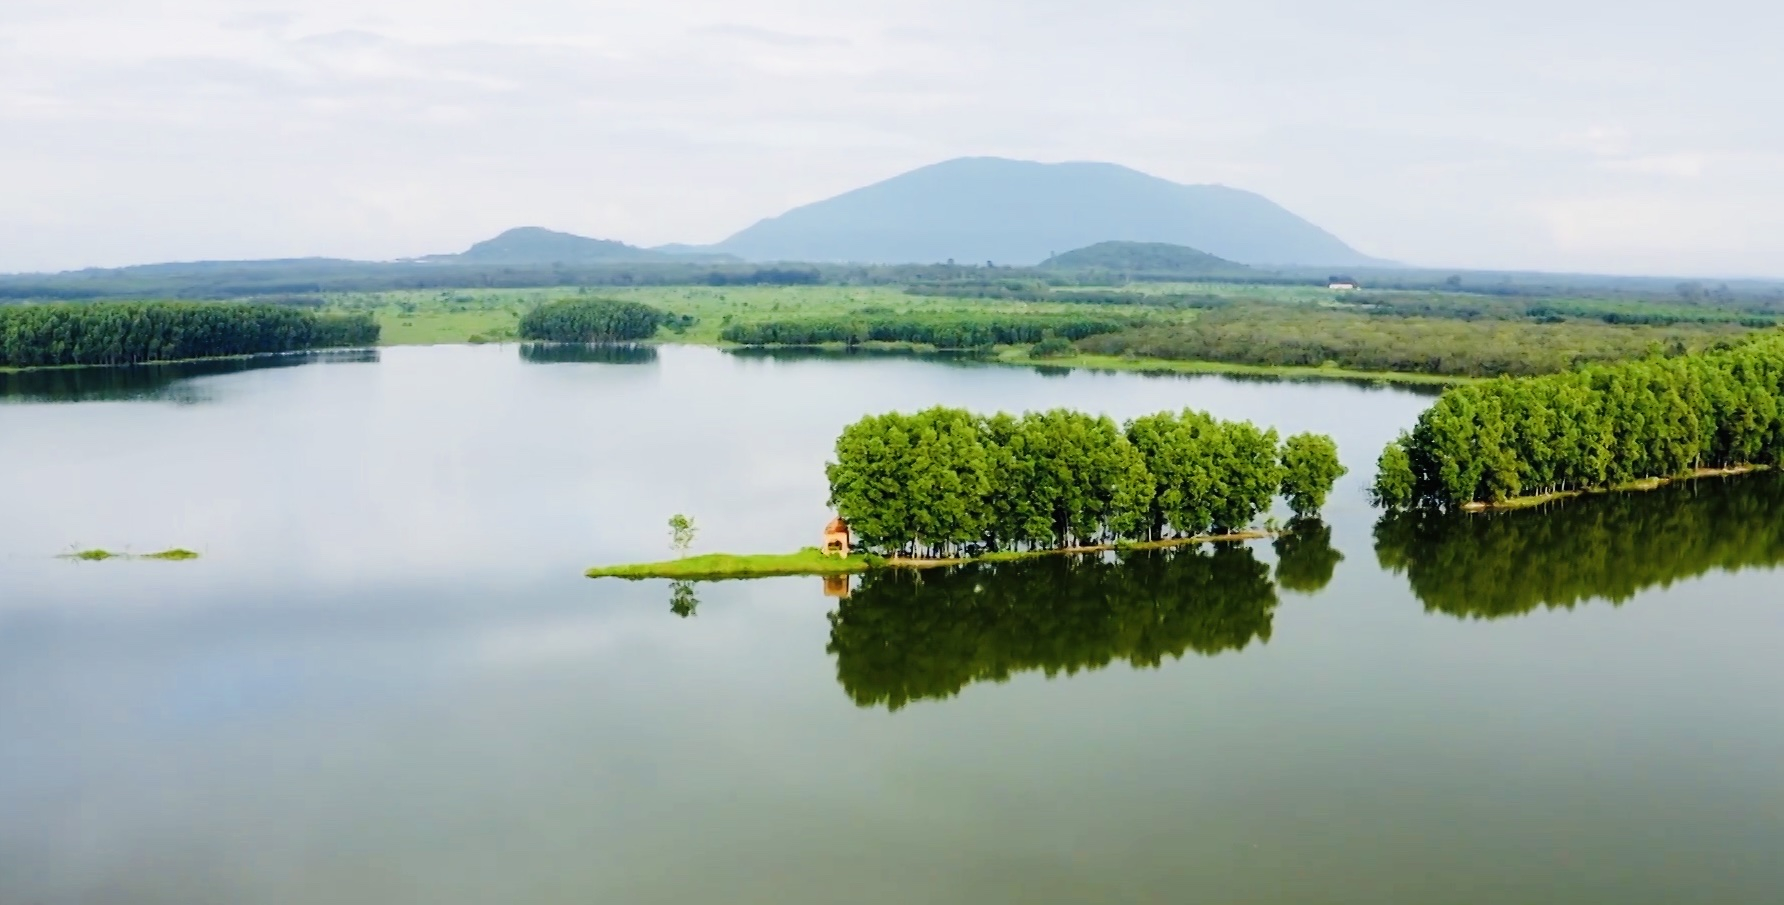 Núi Chứa Chan, huyện Xuân Lộc với phong cảnh sơn thuỷ hữu tình.